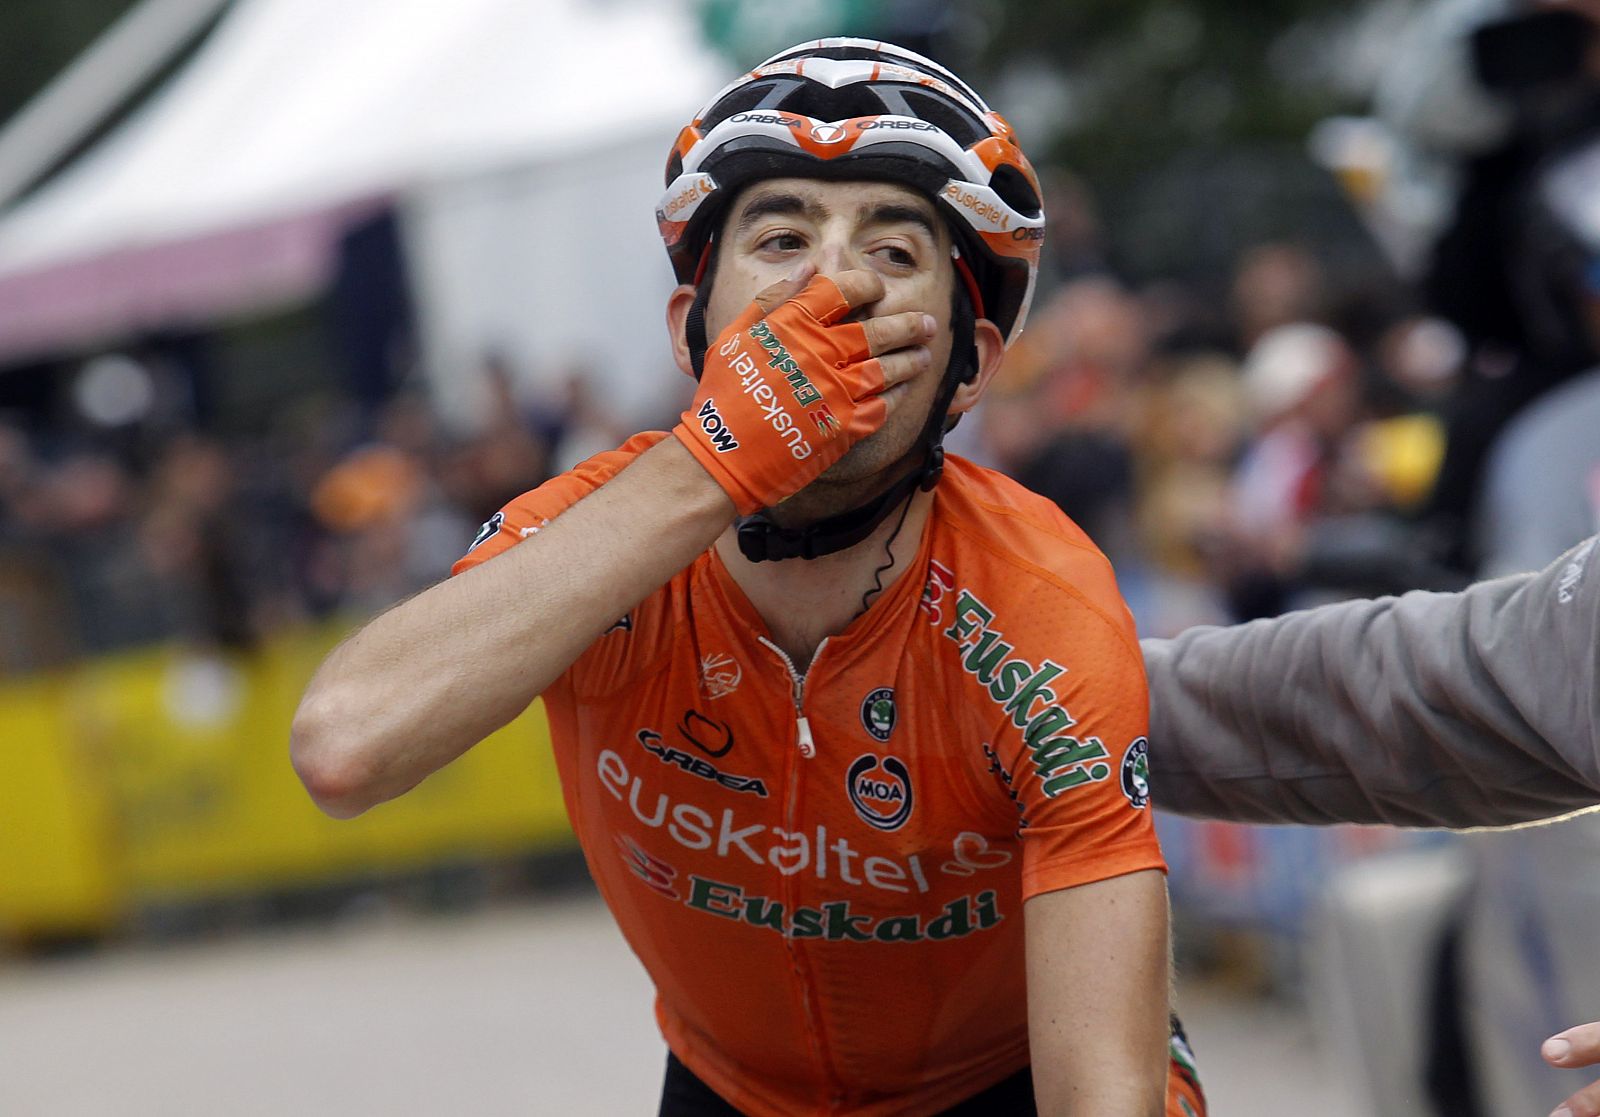 El corredor navarro del Euskaltel Mikel Nieve celebra su victoria en la meta de Val di Fassa.